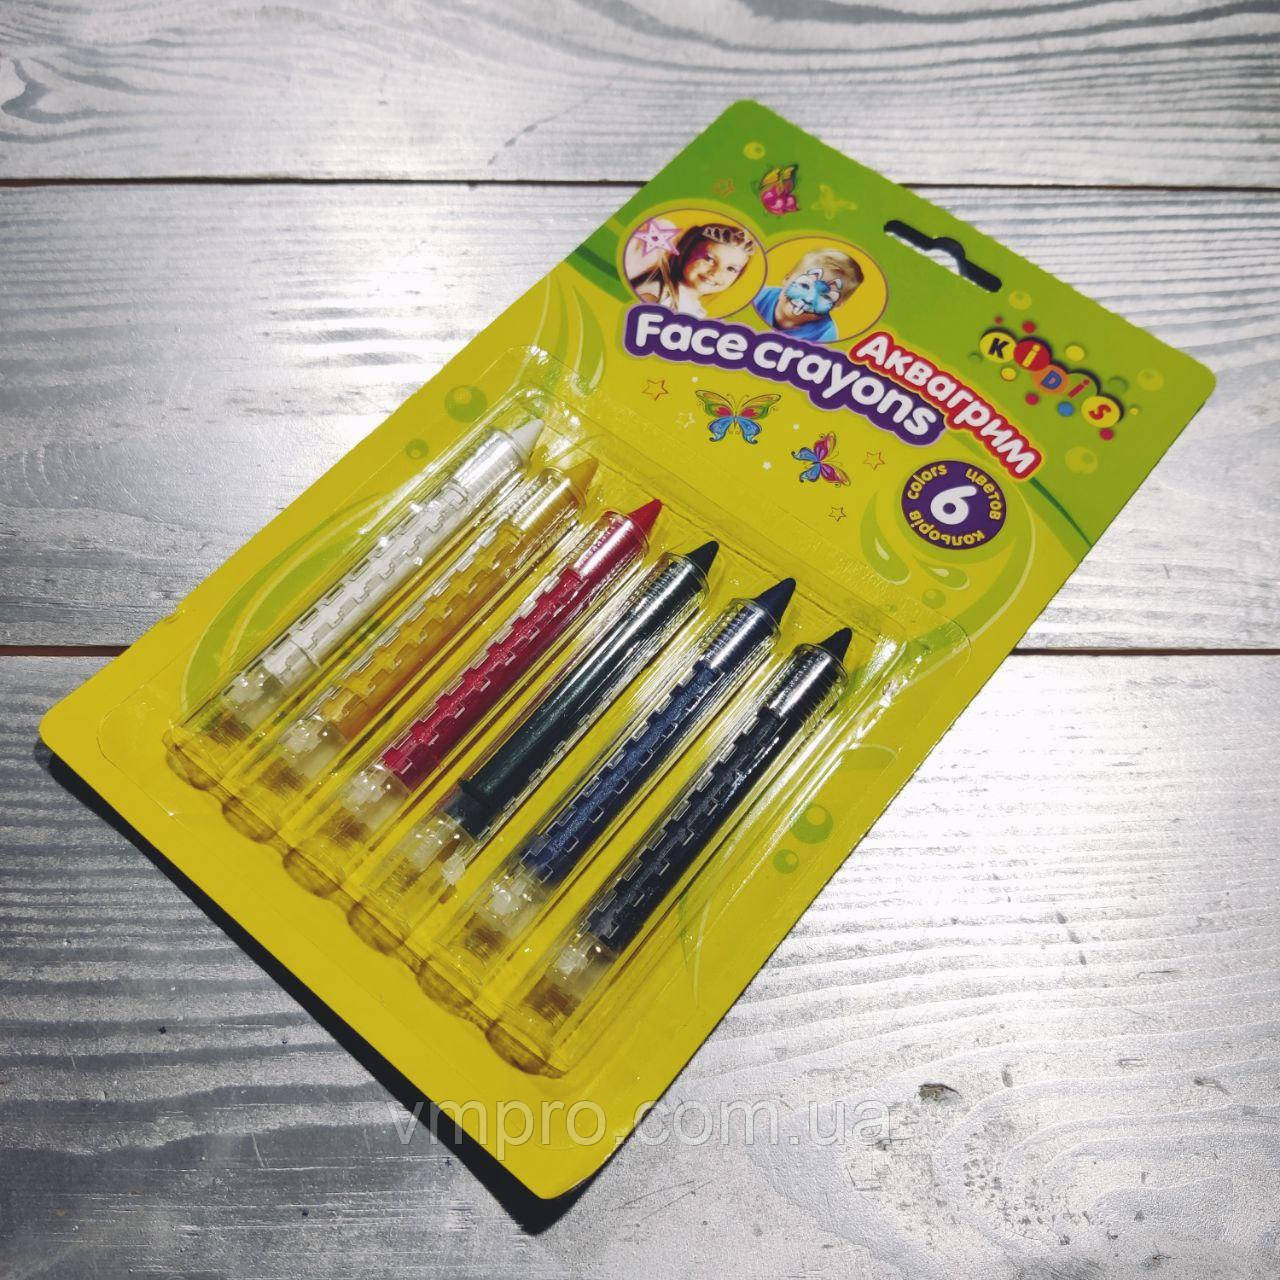 Фарби для гриму 6 кольорів,висувний олівець,No7766, аквагрим, набір для творчості